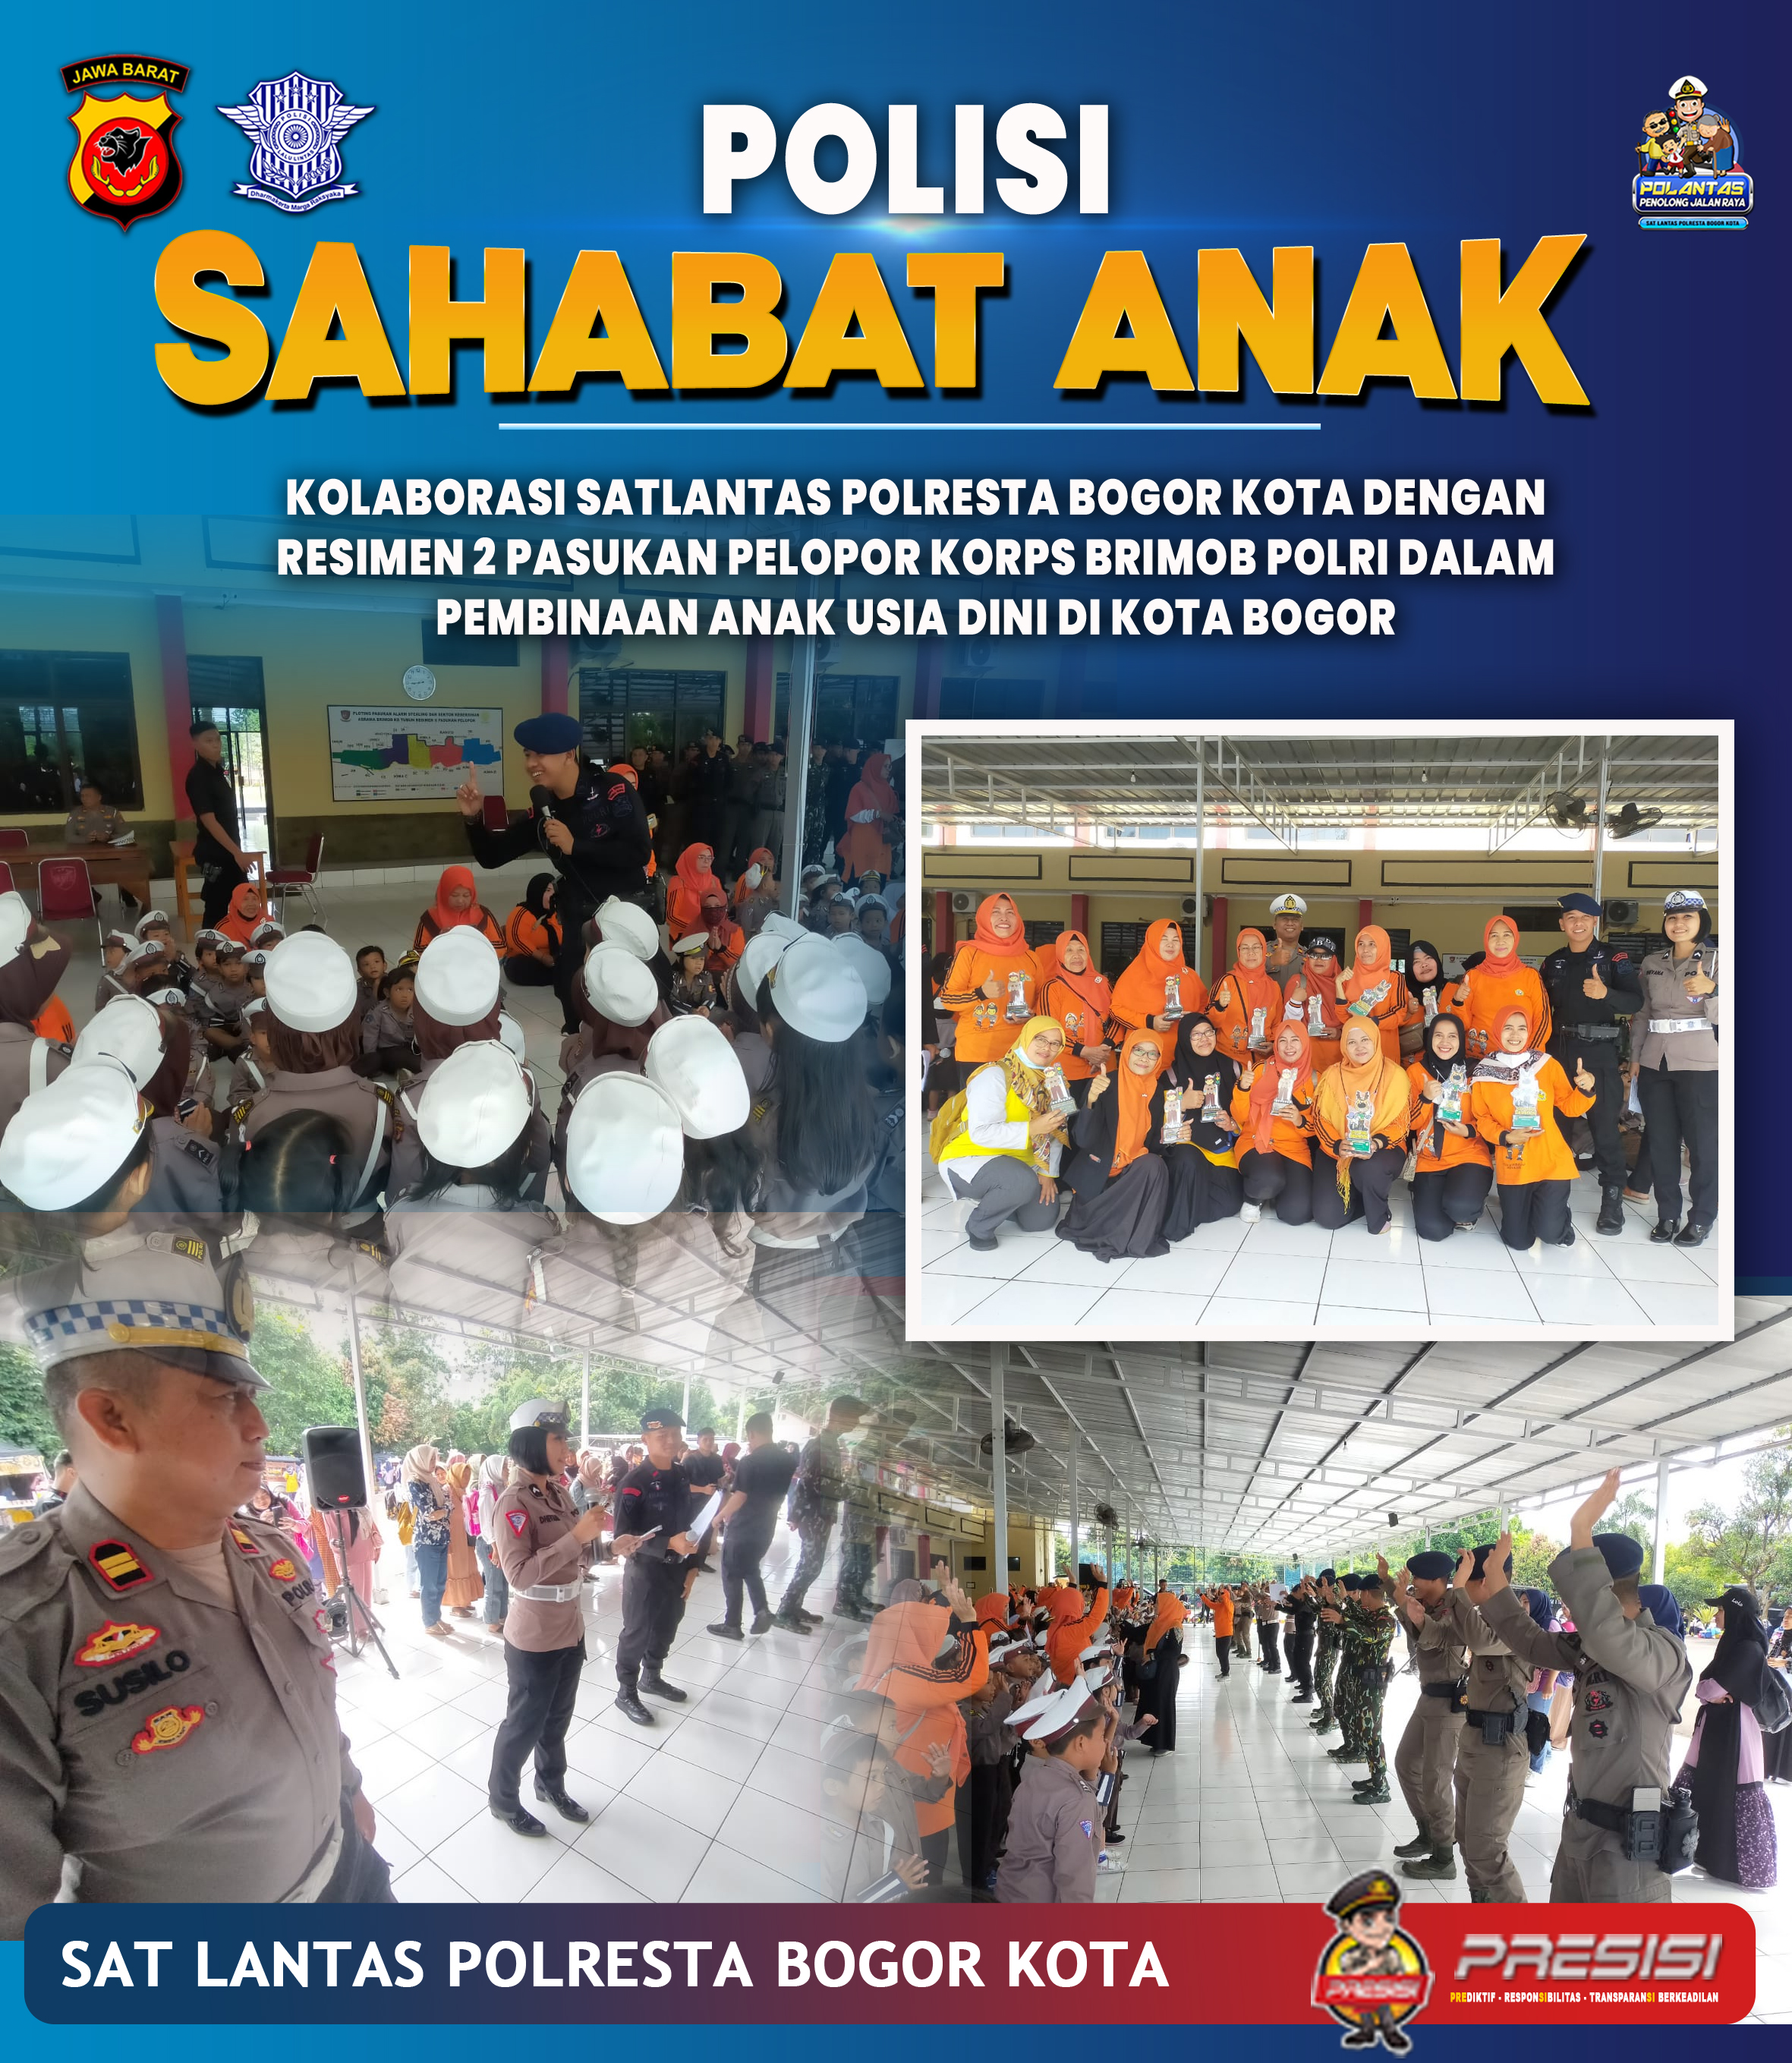 Kolaborasi Satlantas Polresta Bogor kota dengan Resimen 2 Paspor Brimob Polri dalam pembinaan anak usia dini